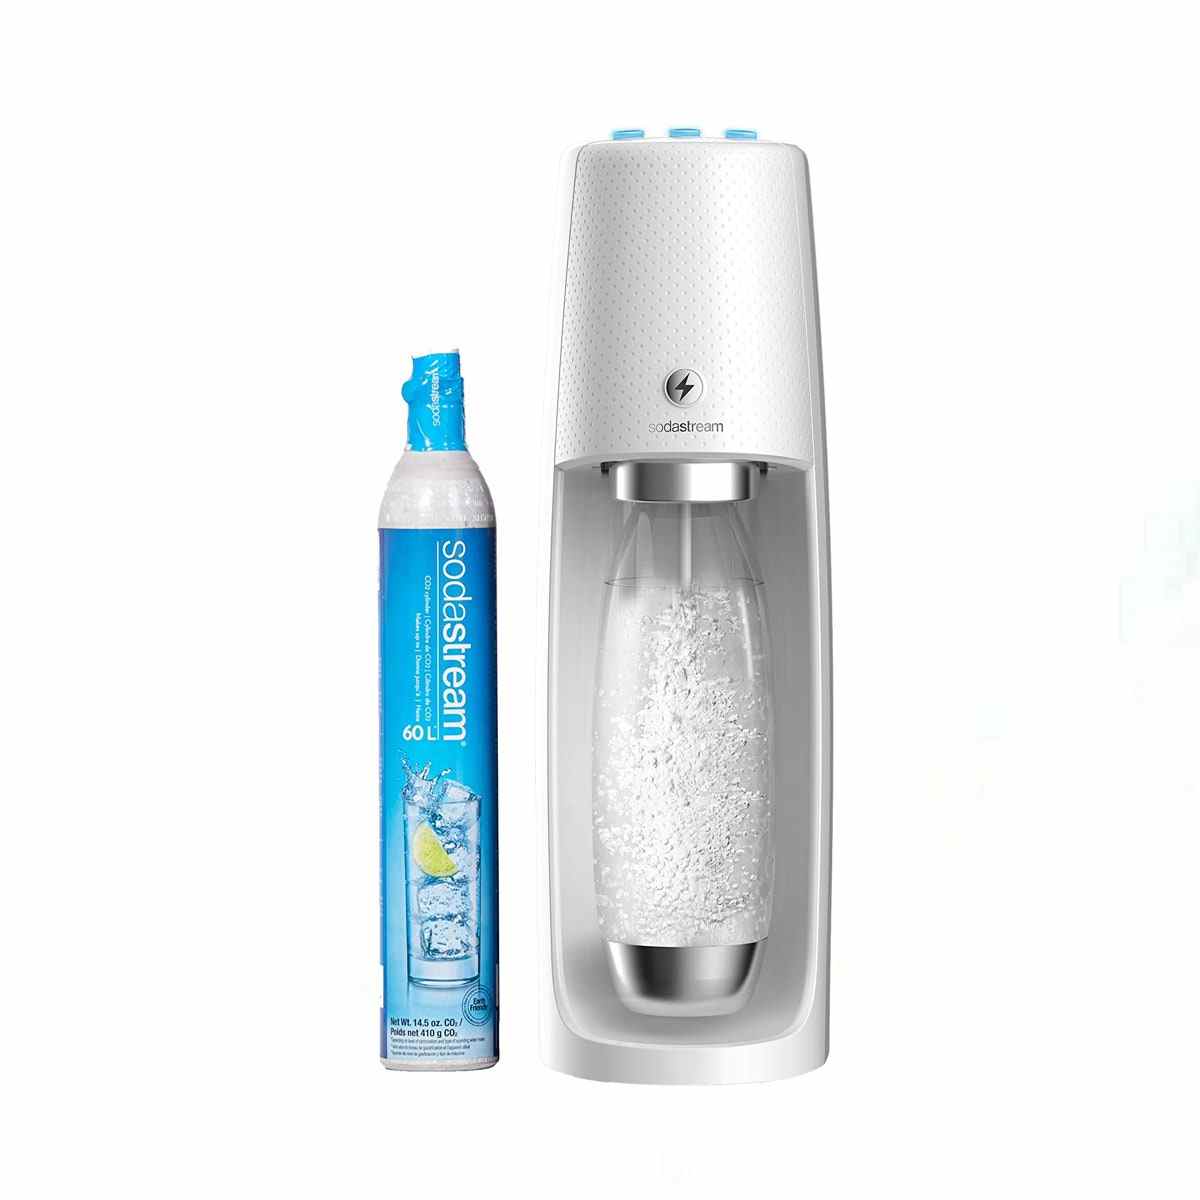 Weiß und Silber SodaStream 1011811011 Fizzi One Touch Sprudelwasserbereiter 